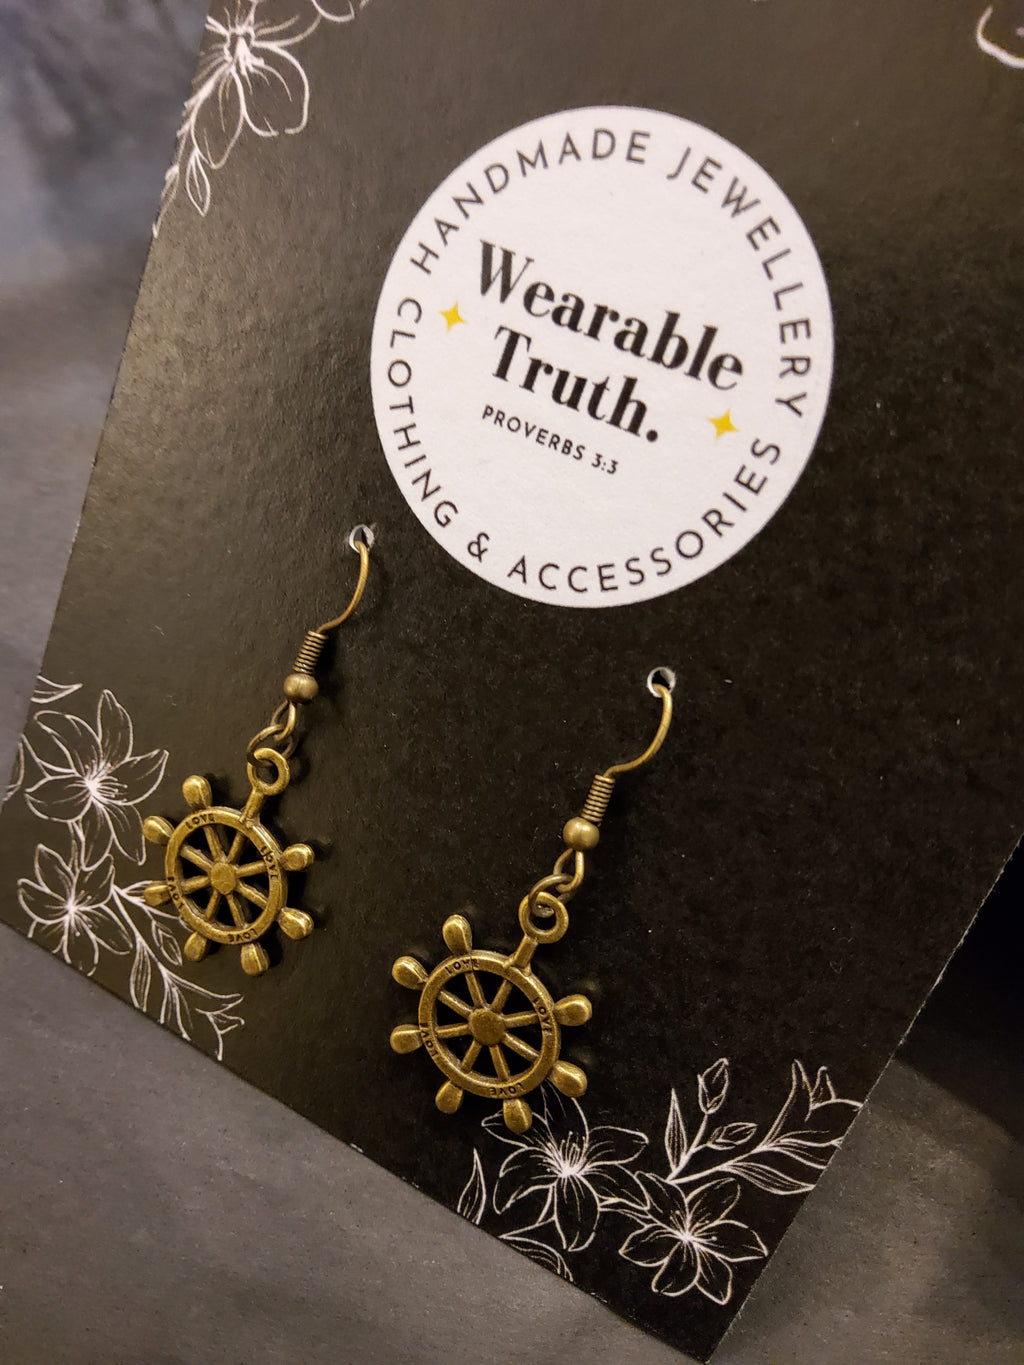 Wearable Truth wheel earrings